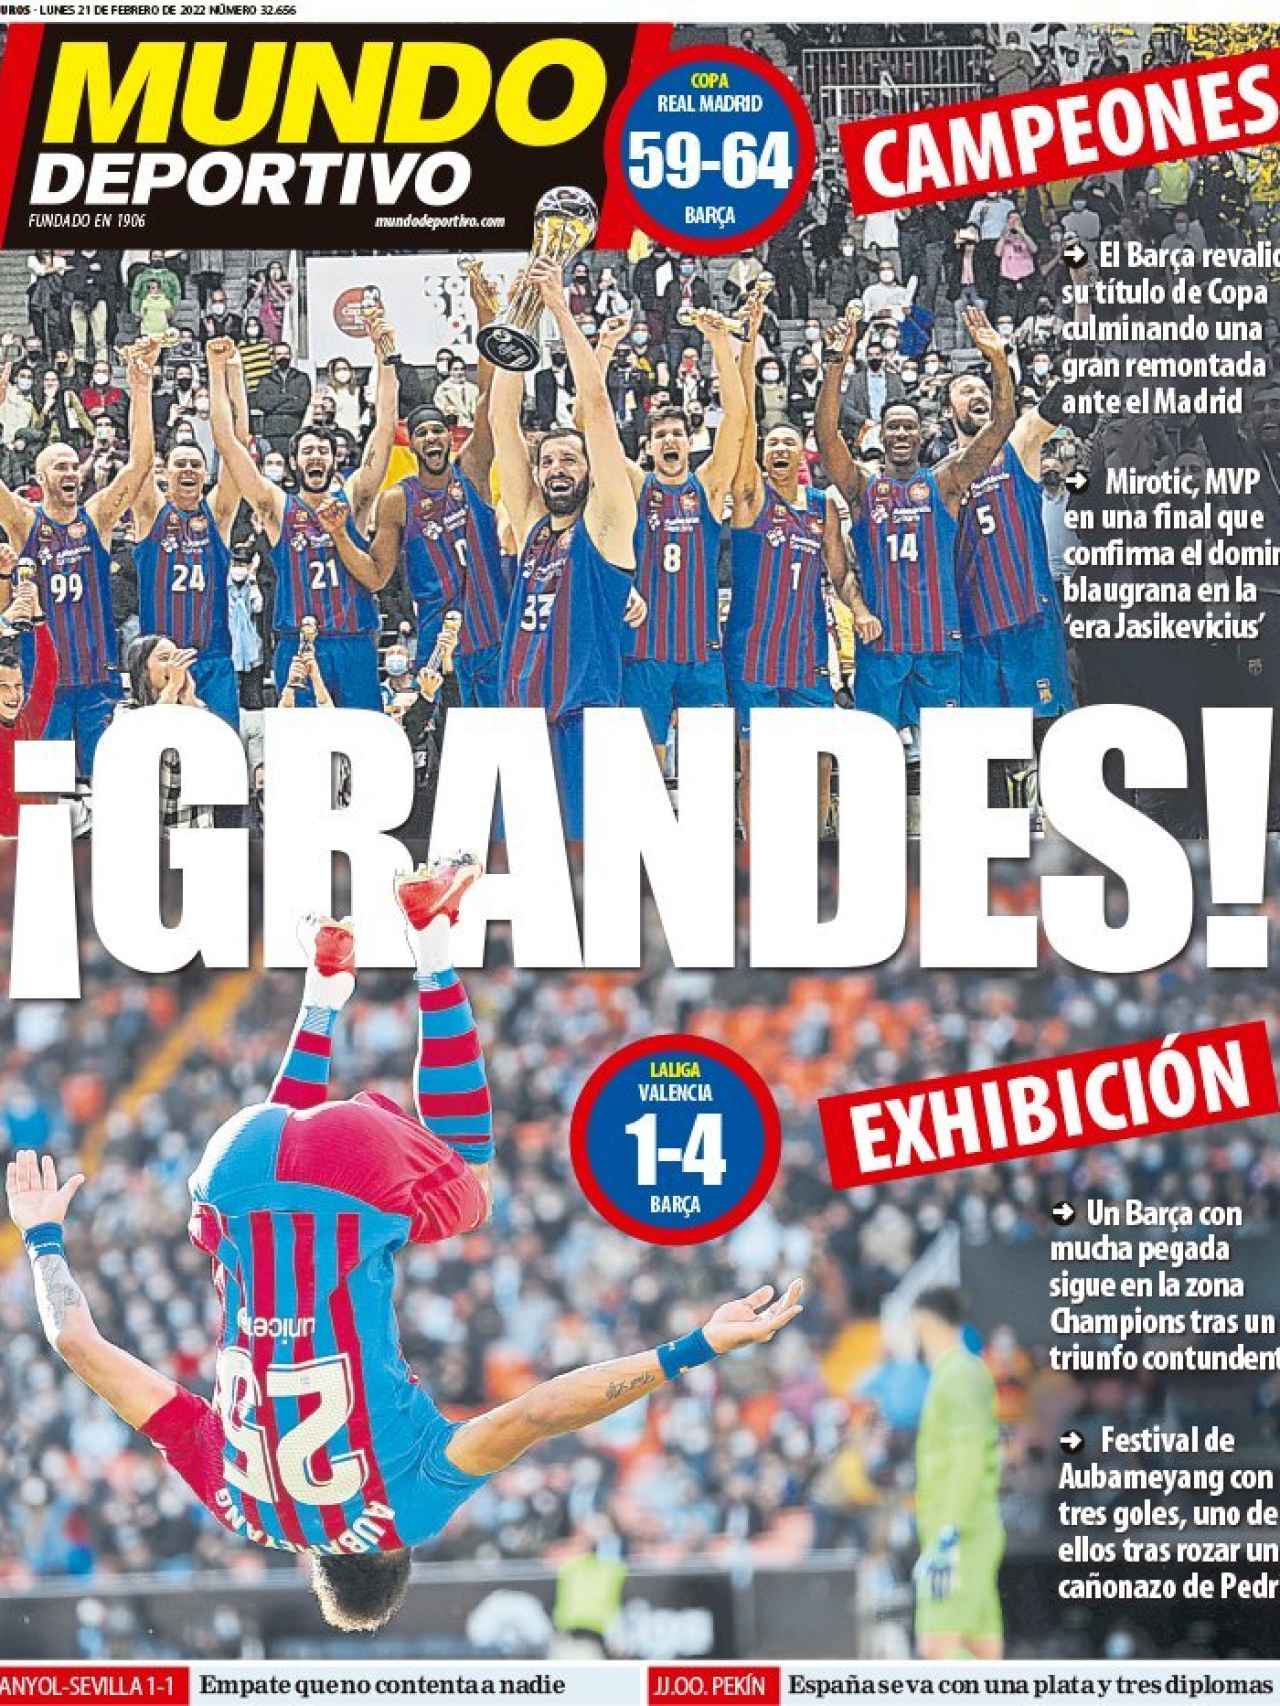 La portada del diario Mundo Deportivo (21/02/2022)